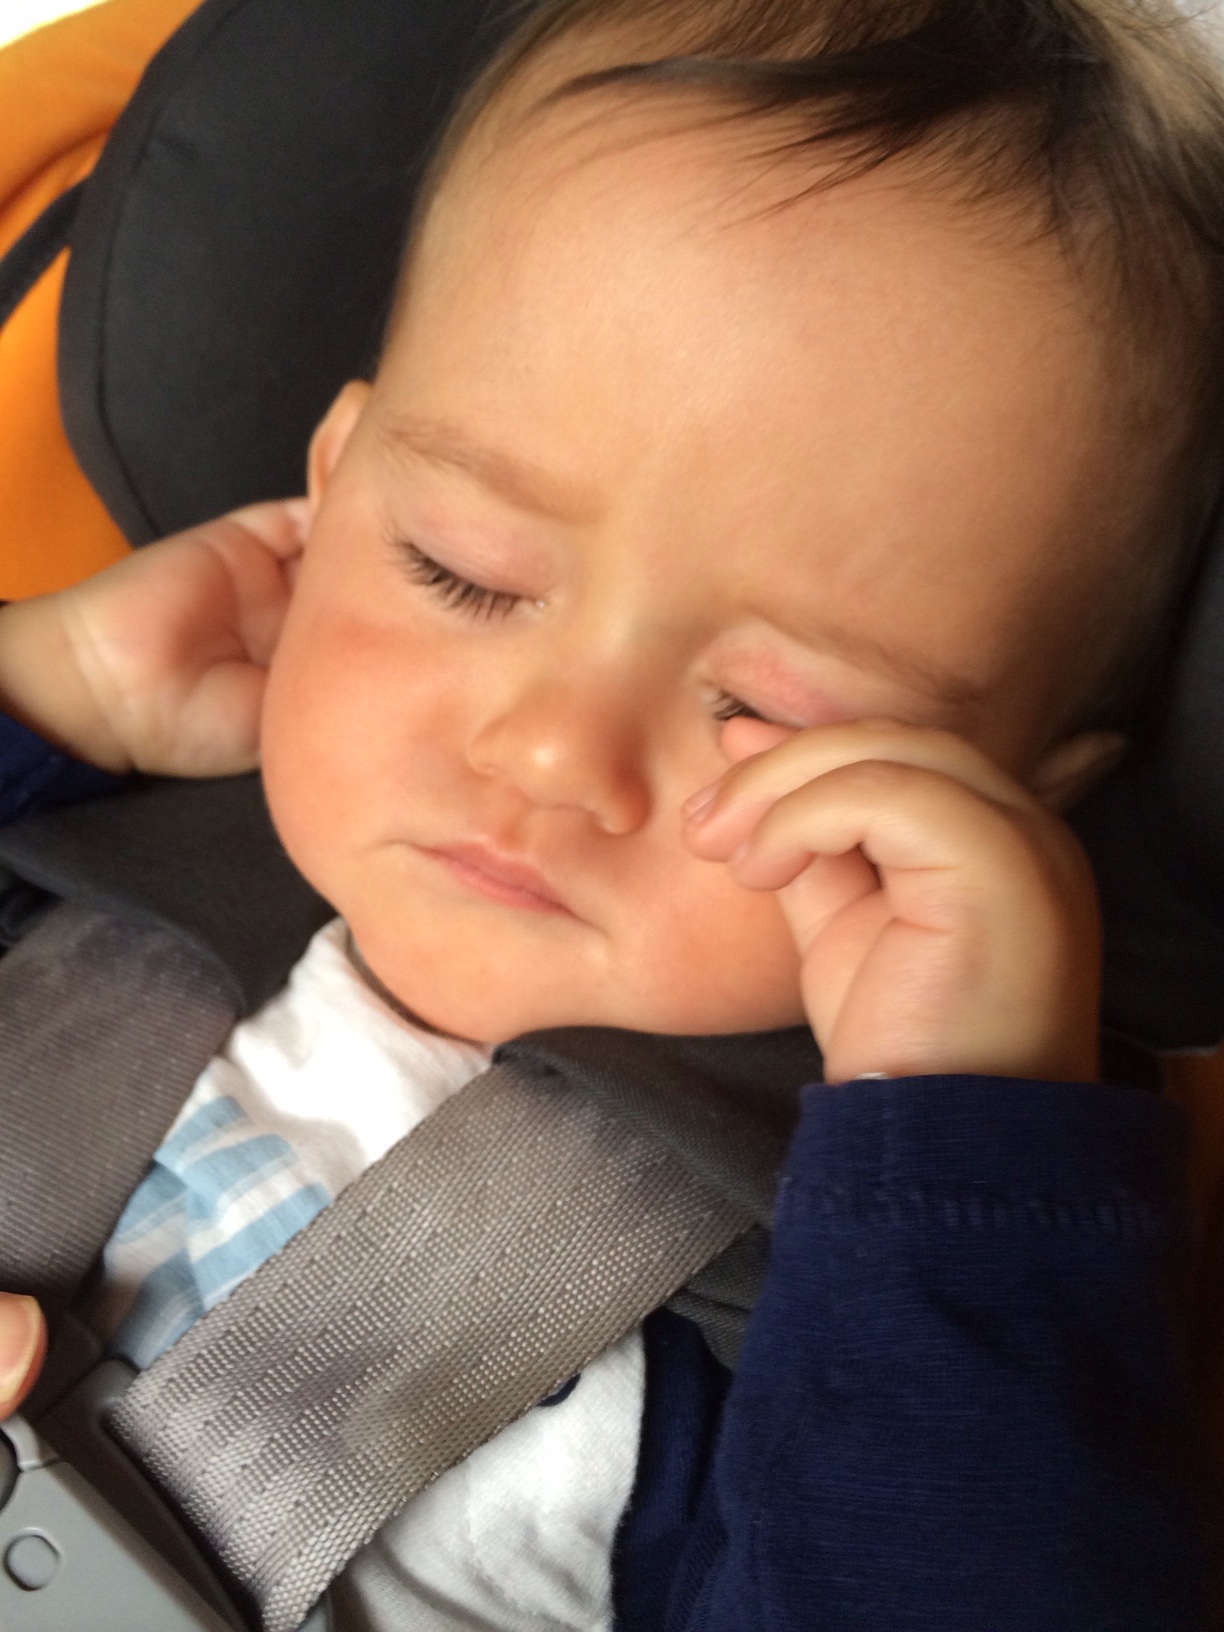 Baby boy o unwell in car seat 